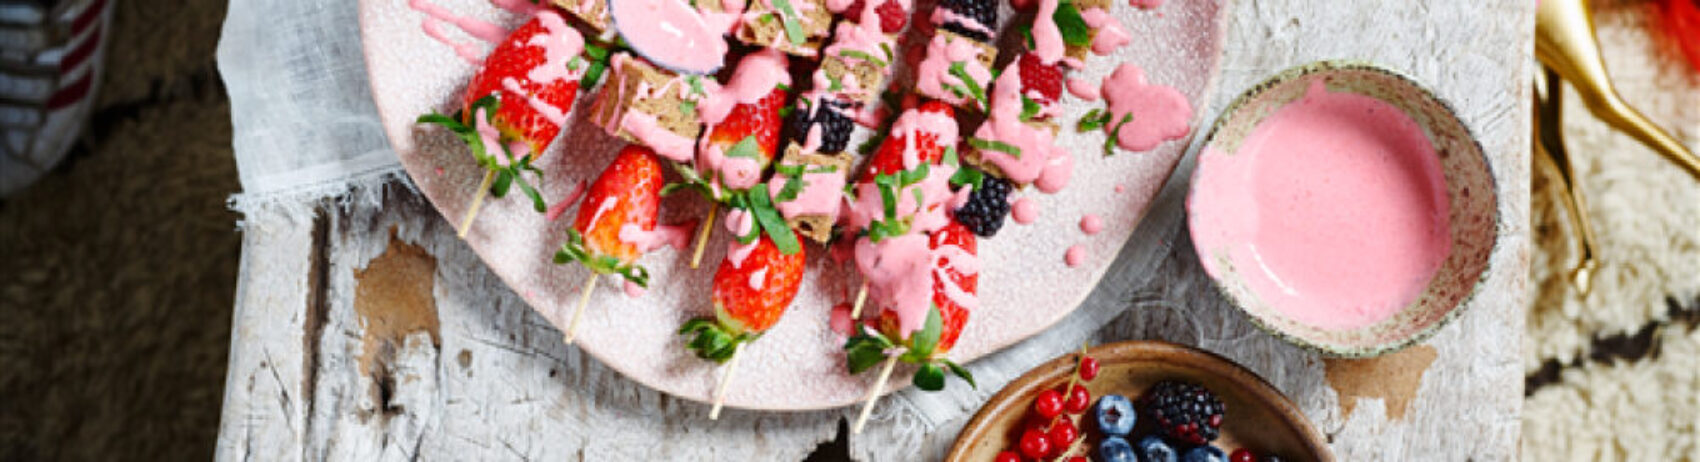 Brochettes de gâteau d’épeautre aux fruits et coulis de fraises